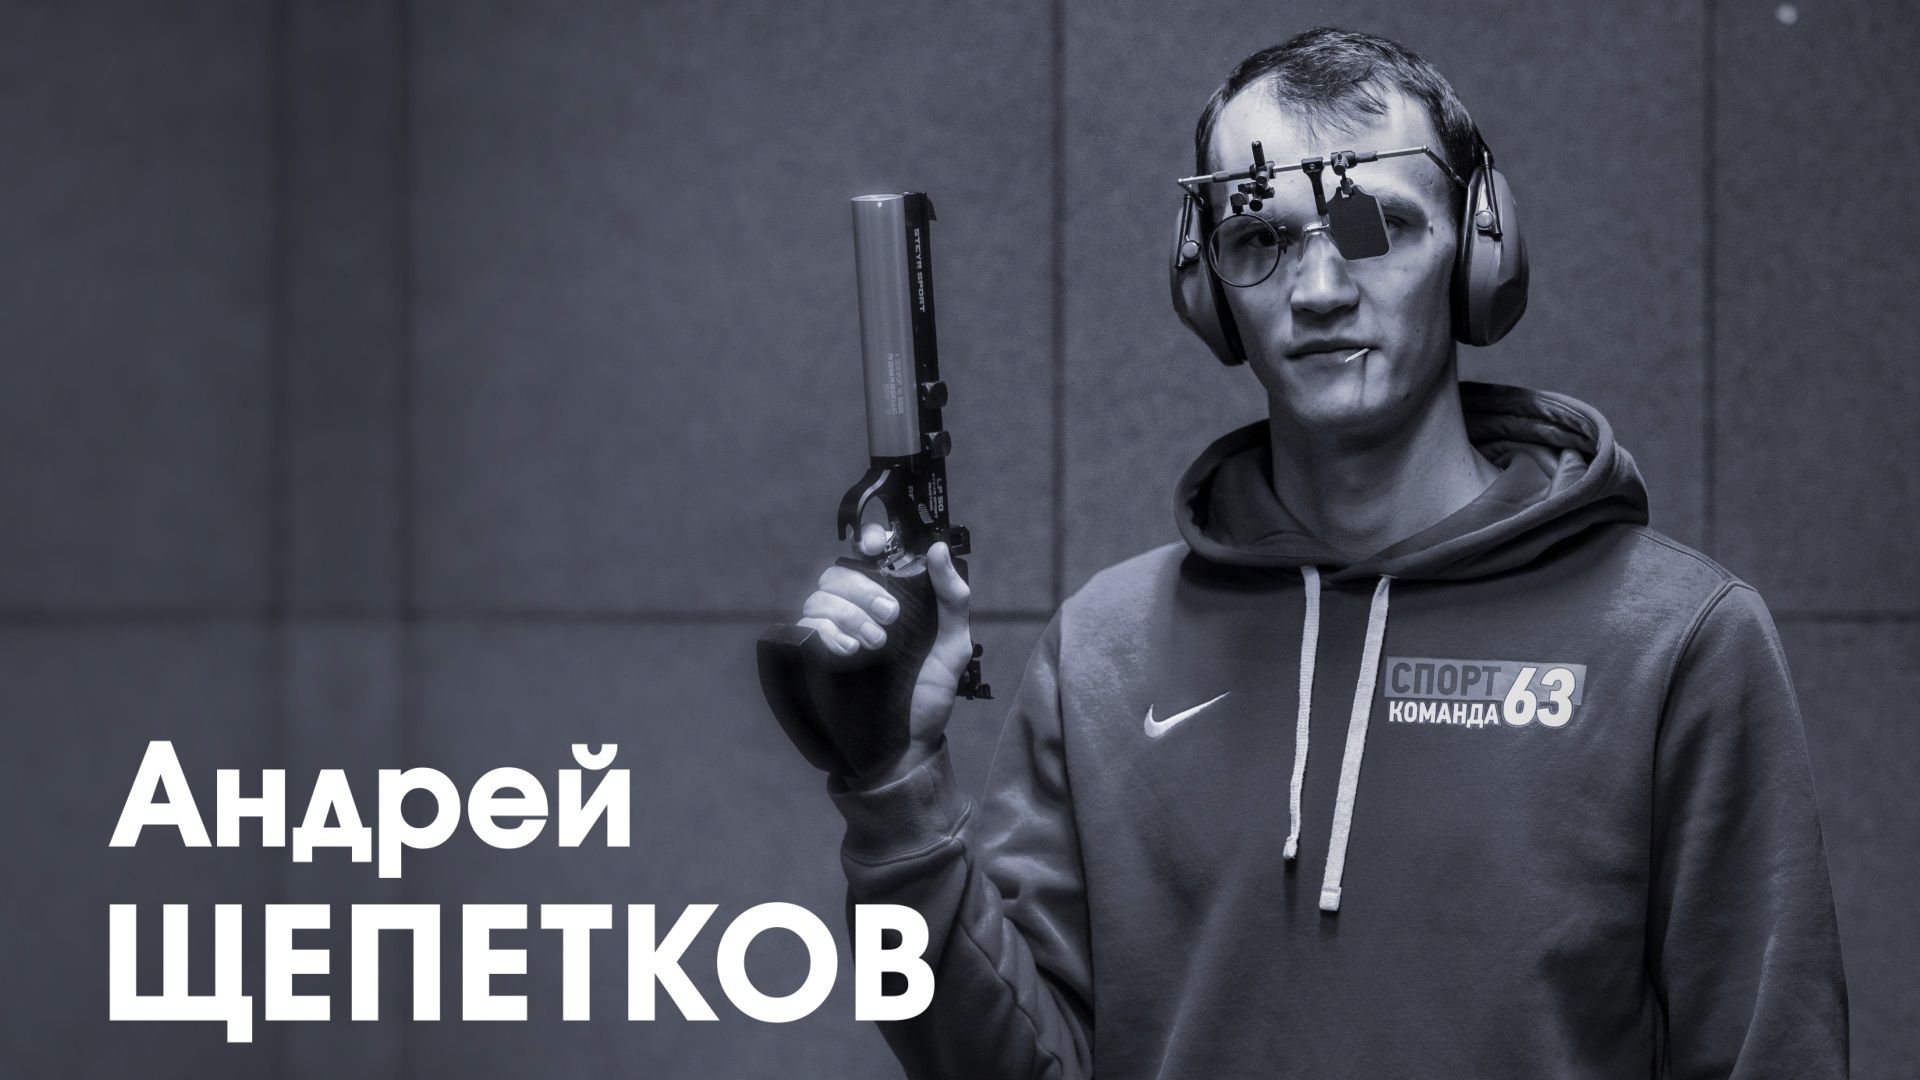 Андрей Щепетков. Мастер спорта России международного класса по пулевой стрельбе